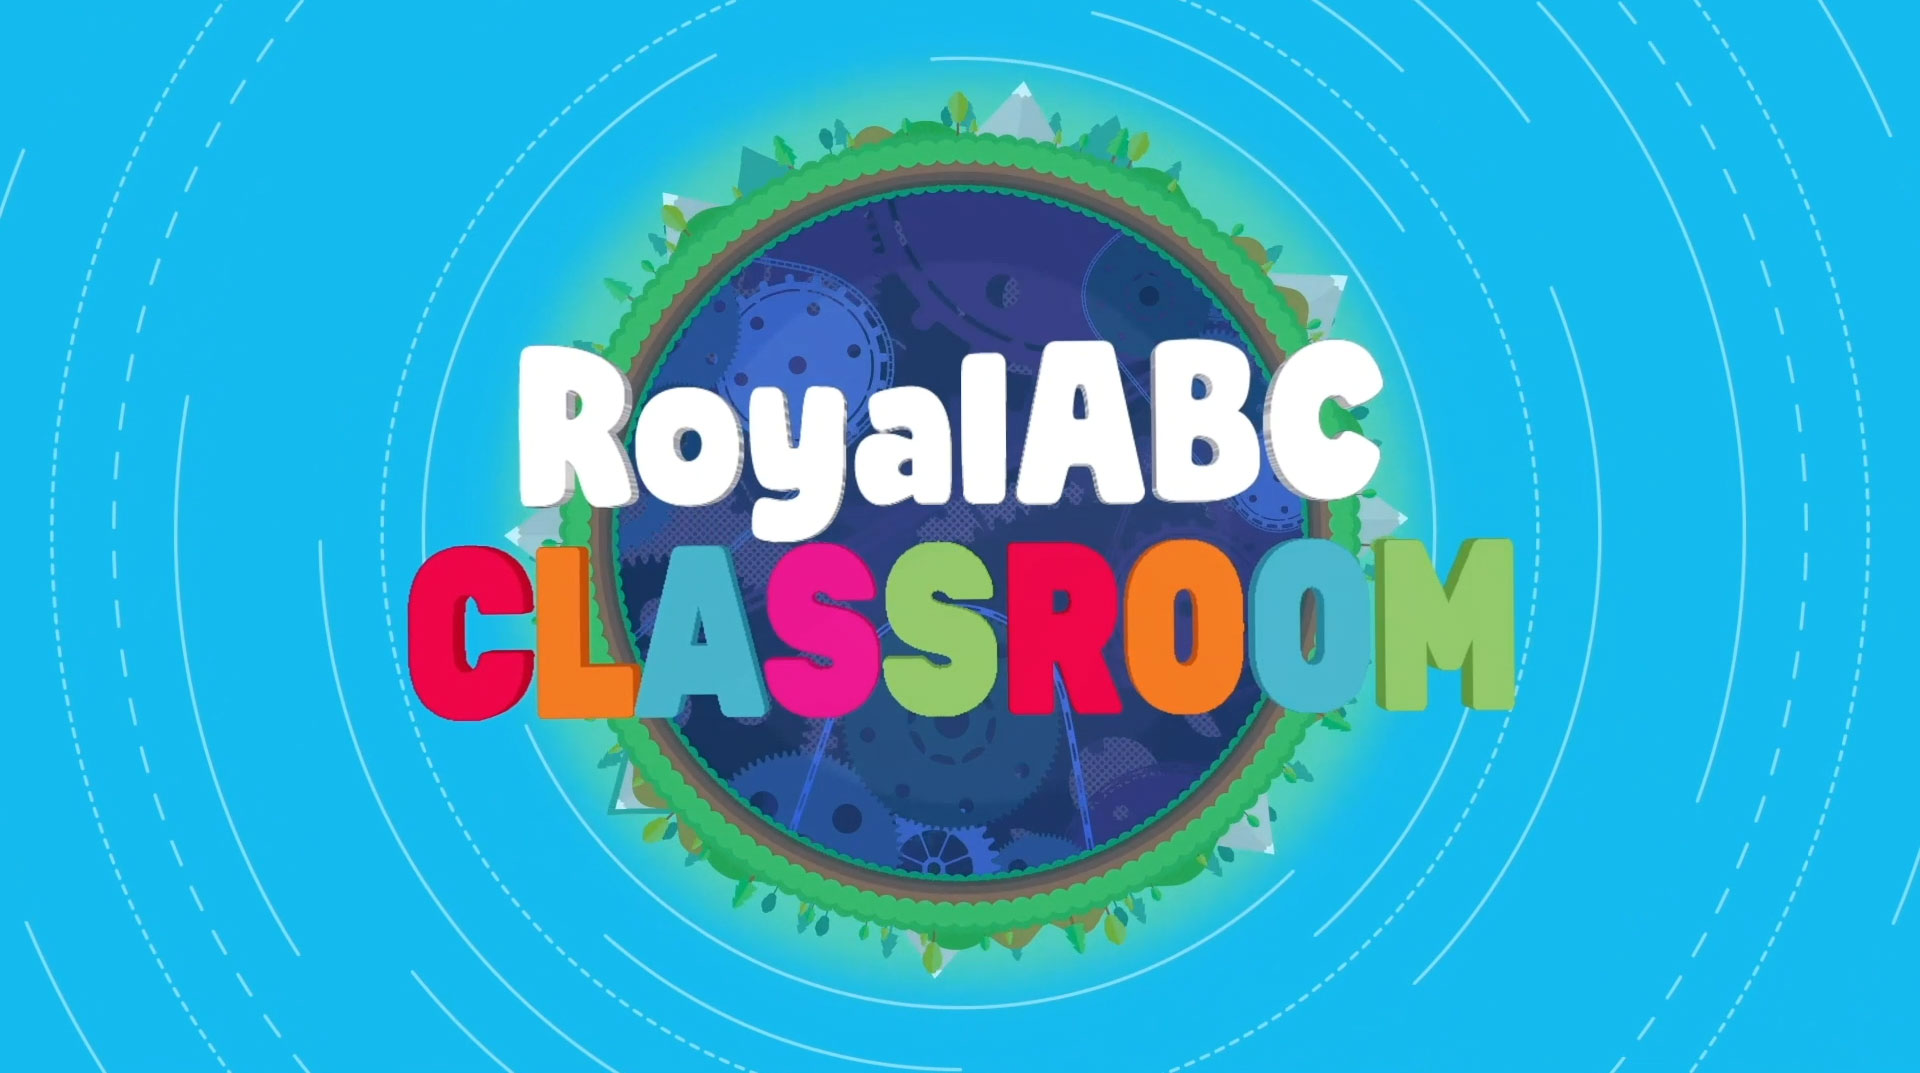 RoyalABC là phương pháp giáo dục tiên tiến giúp trẻ em học tiếng Anh một cách hiệu quả và thú vị. Với RoyalABC, trẻ em sẽ được học tiếng Anh thông qua các trò chơi và hoạt động thú vị. Xem hình ảnh để thấy cách RoyalABC trở nên quan trọng trong việc giáo dục trẻ em.